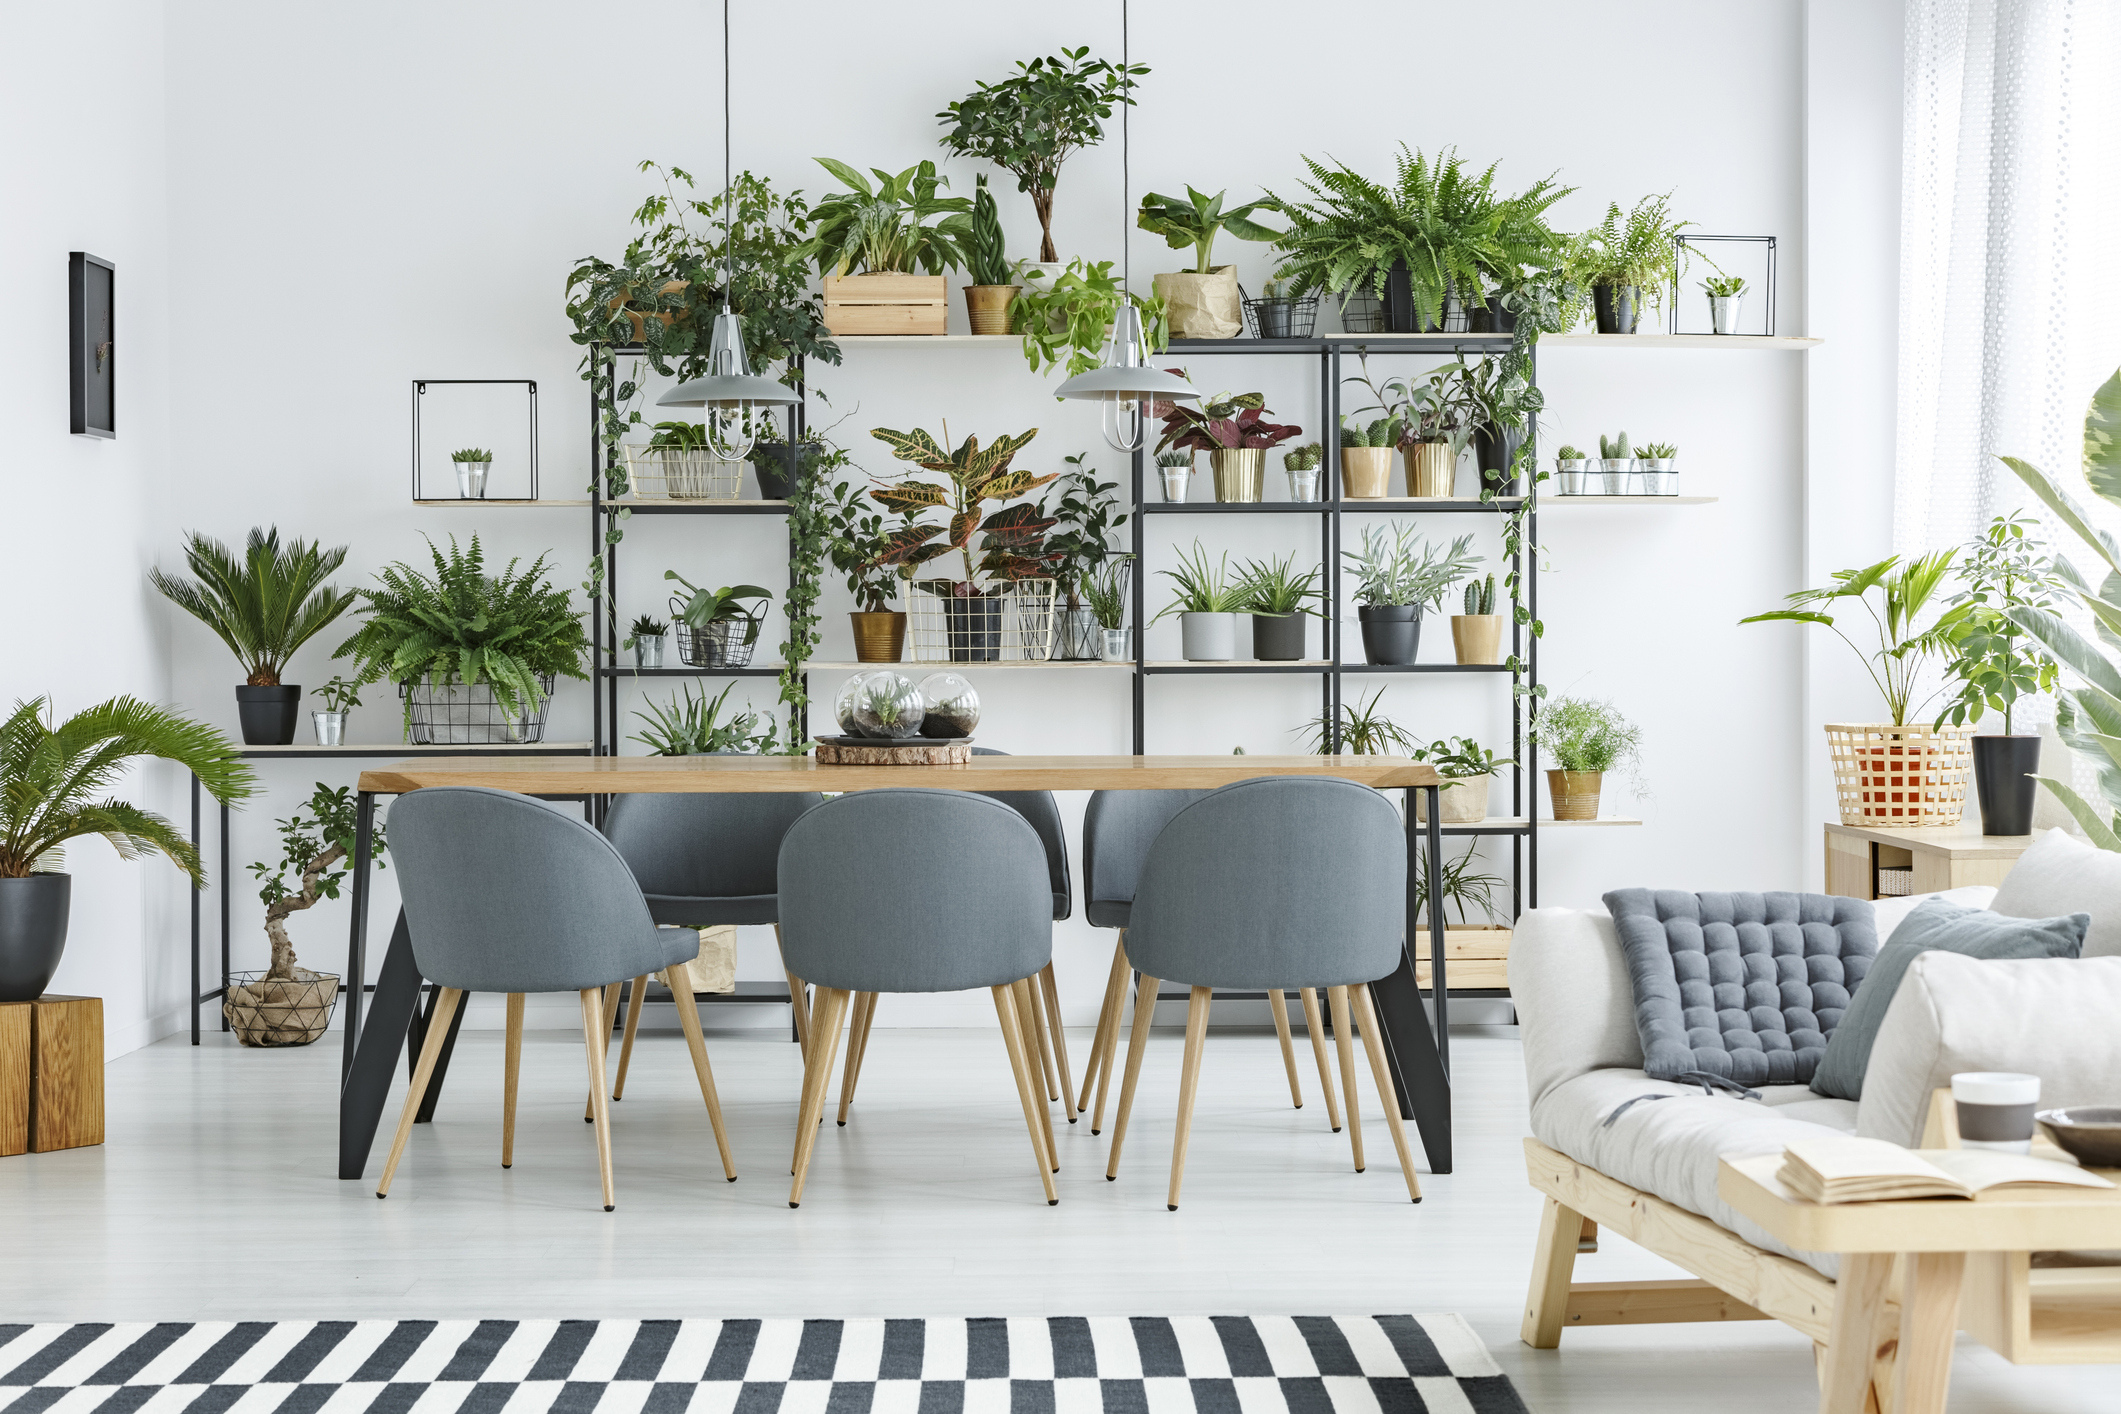 sala de jantar com mesa de madeira e cadeiras com estofado cinza. Estante com diversas plantas